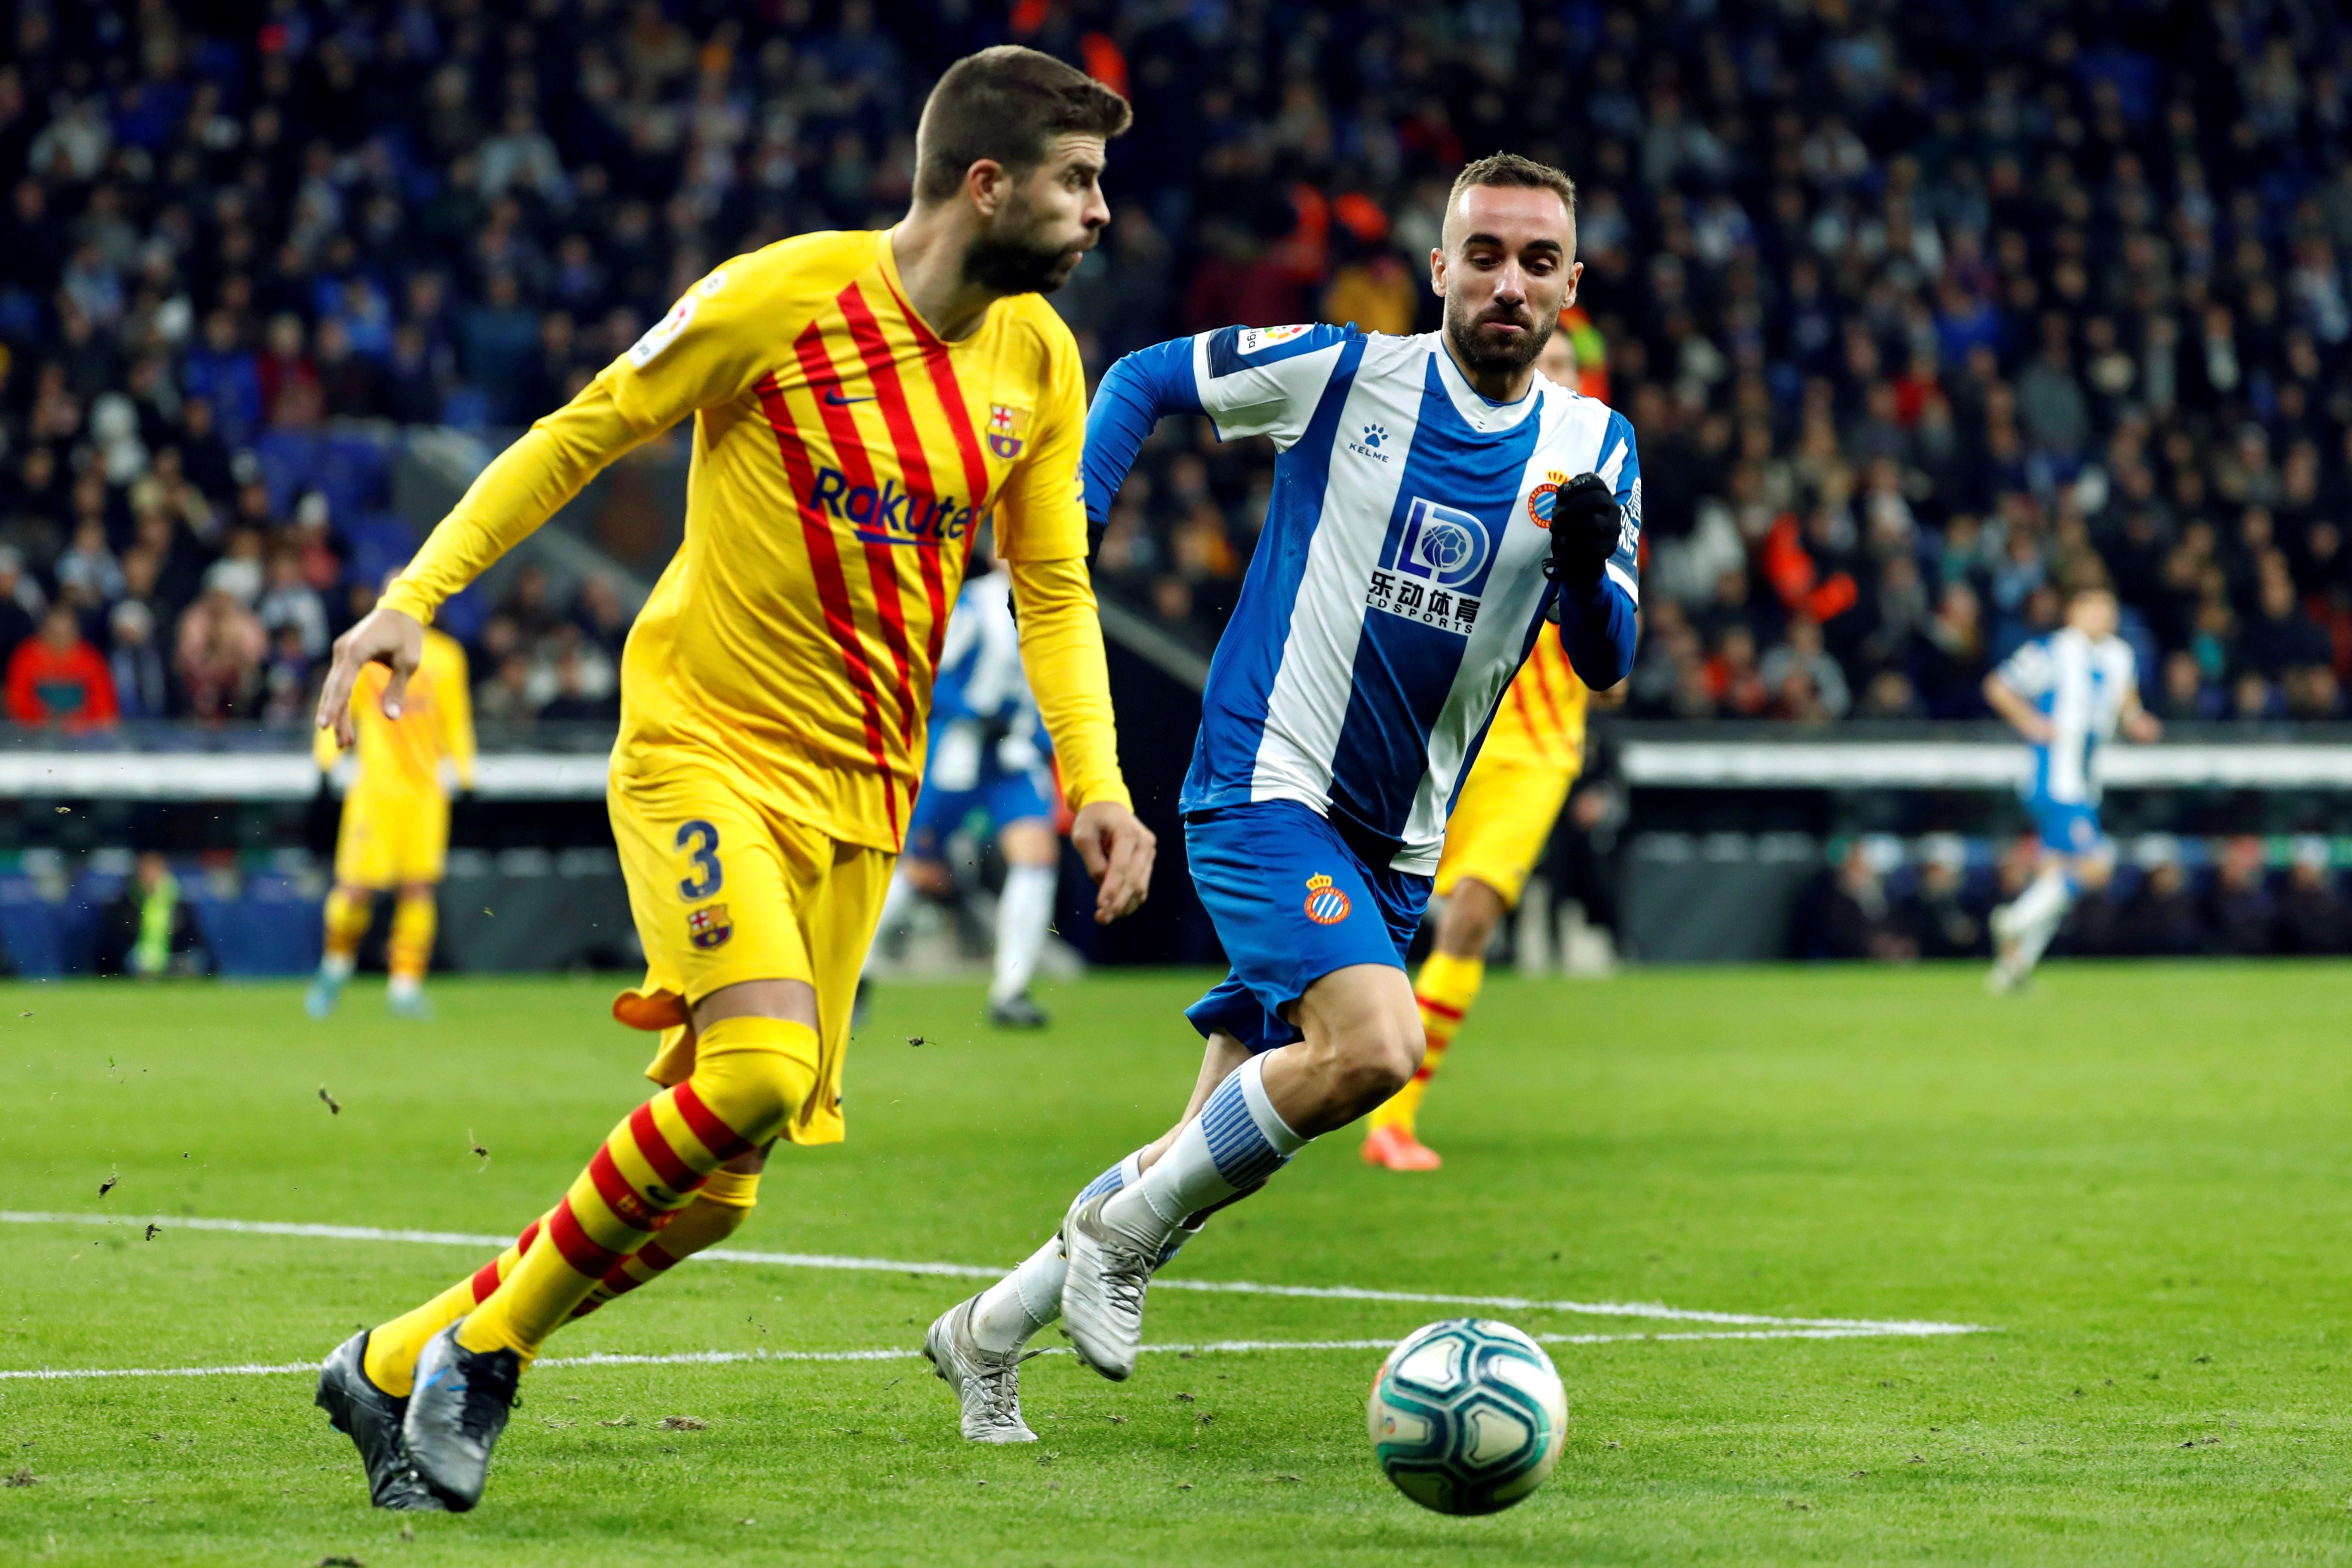 La Liga denunciará los insultos contra Piqué en el campo del Espanyol